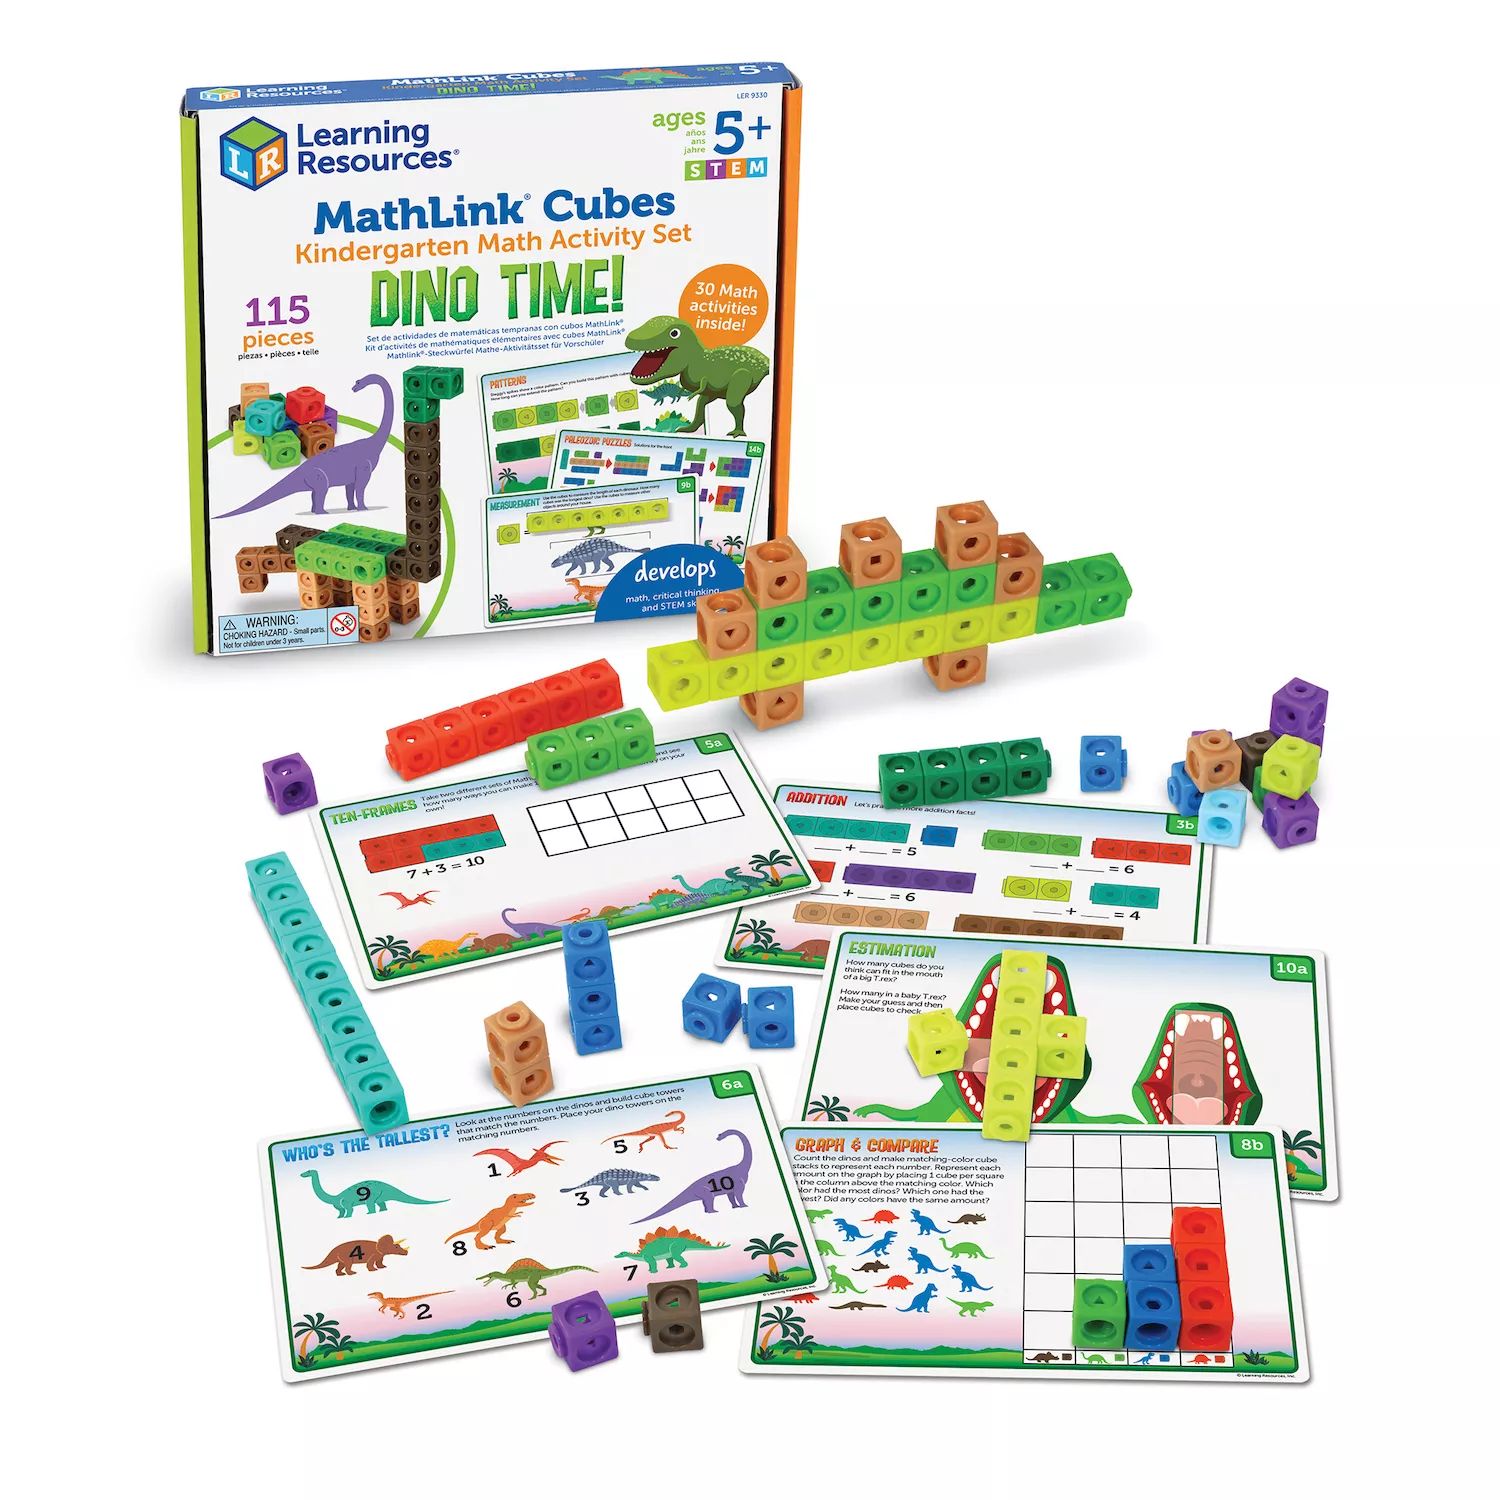 resources Учебные ресурсы Mathlink Cubes Набор математических занятий для детского сада: Dino Time! Learning Resources